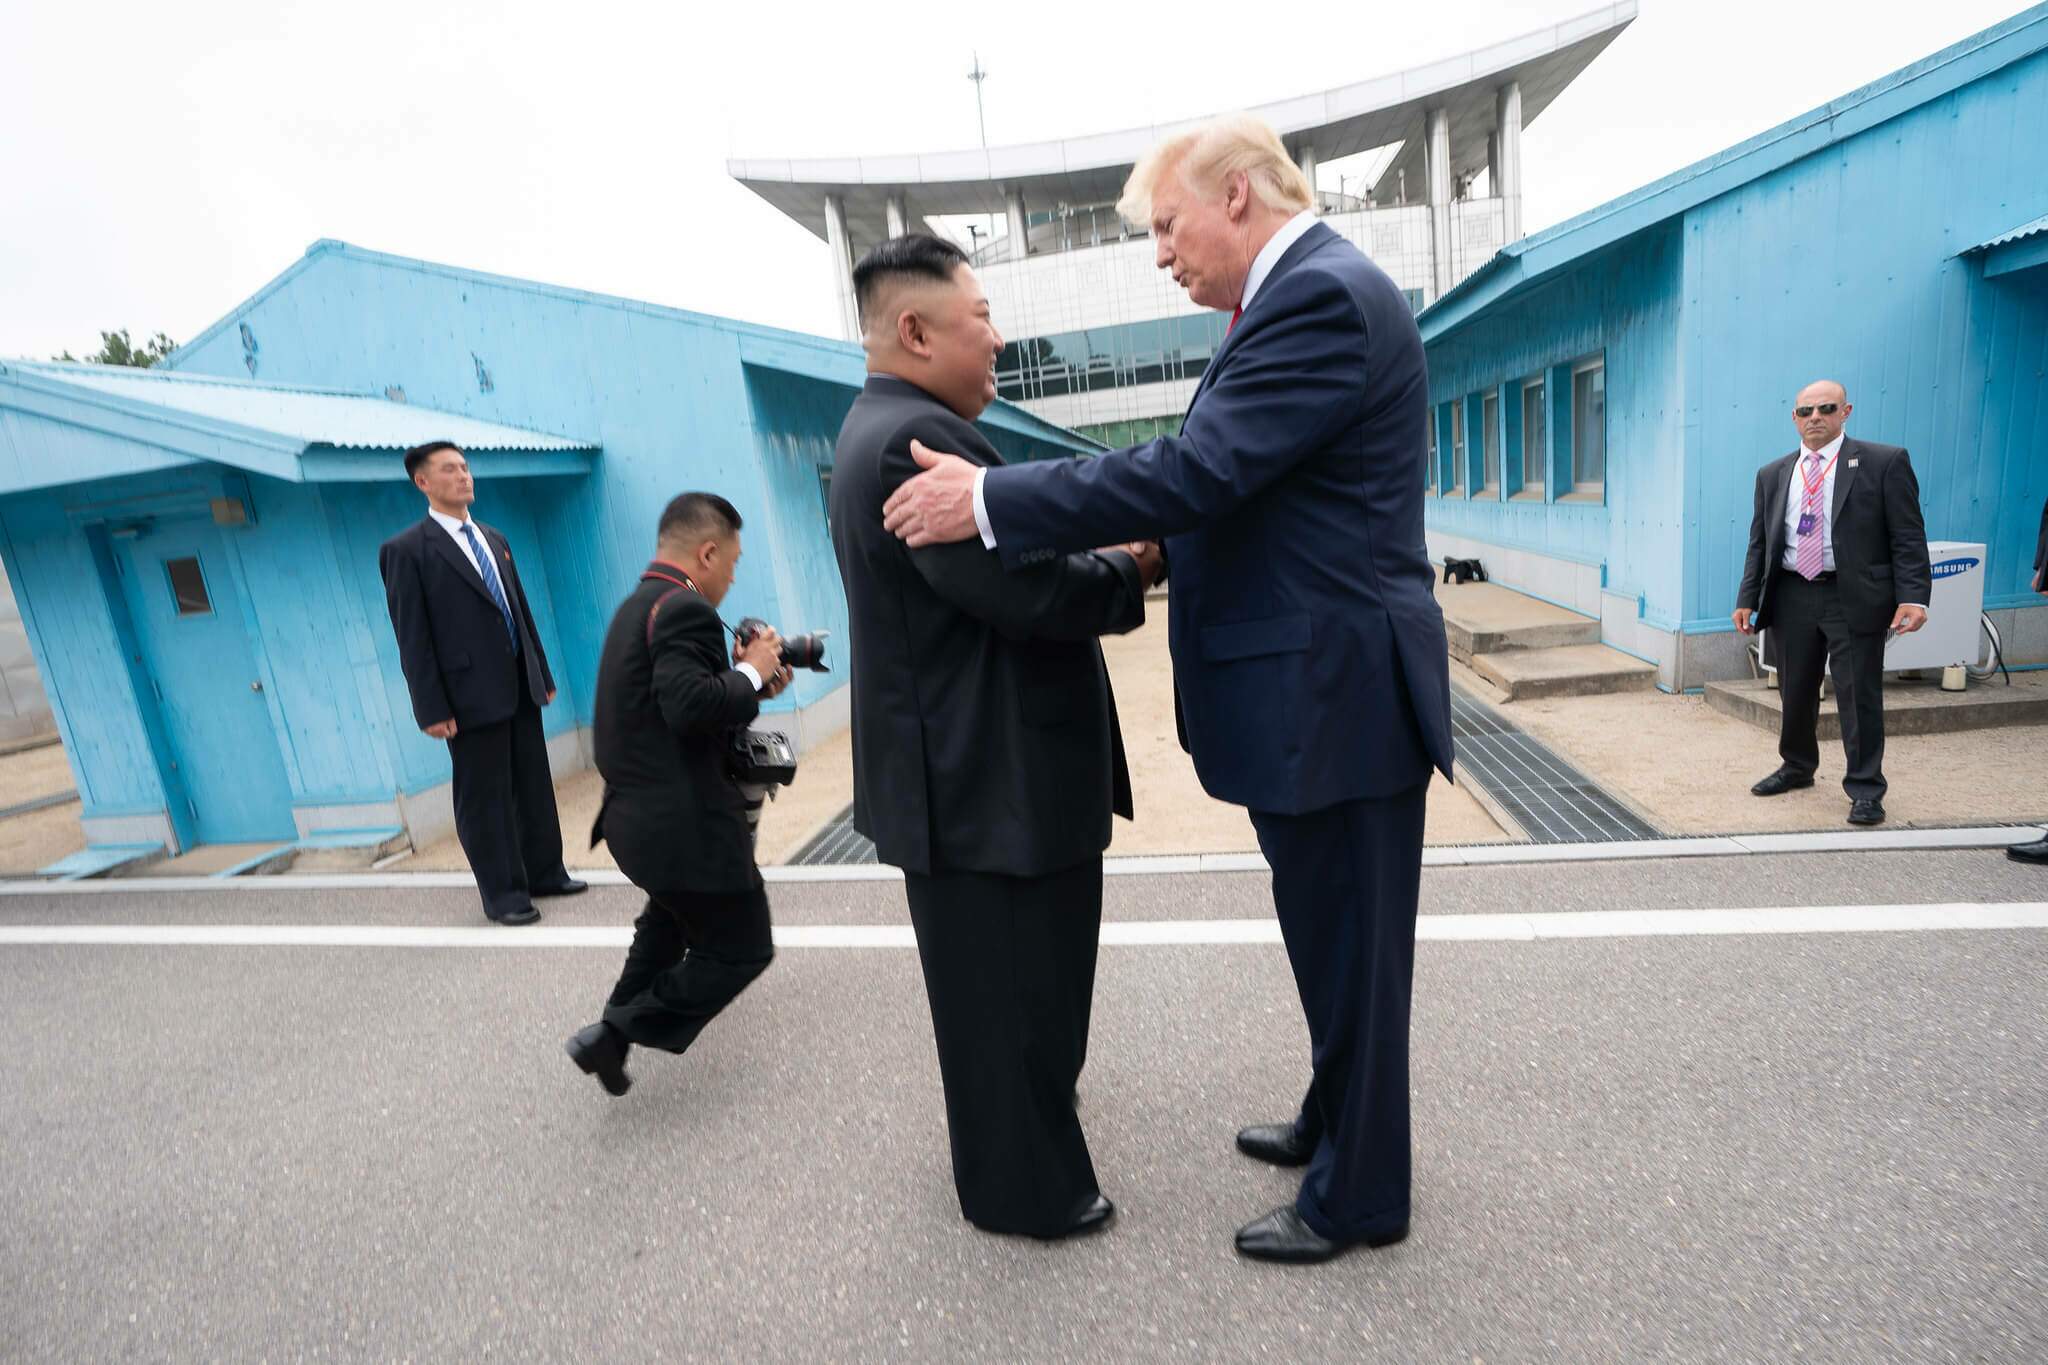 Os presidentes de Estados Unidos e Coreia do Norte se cumprimentando (Imagem: Fotos Públicas)